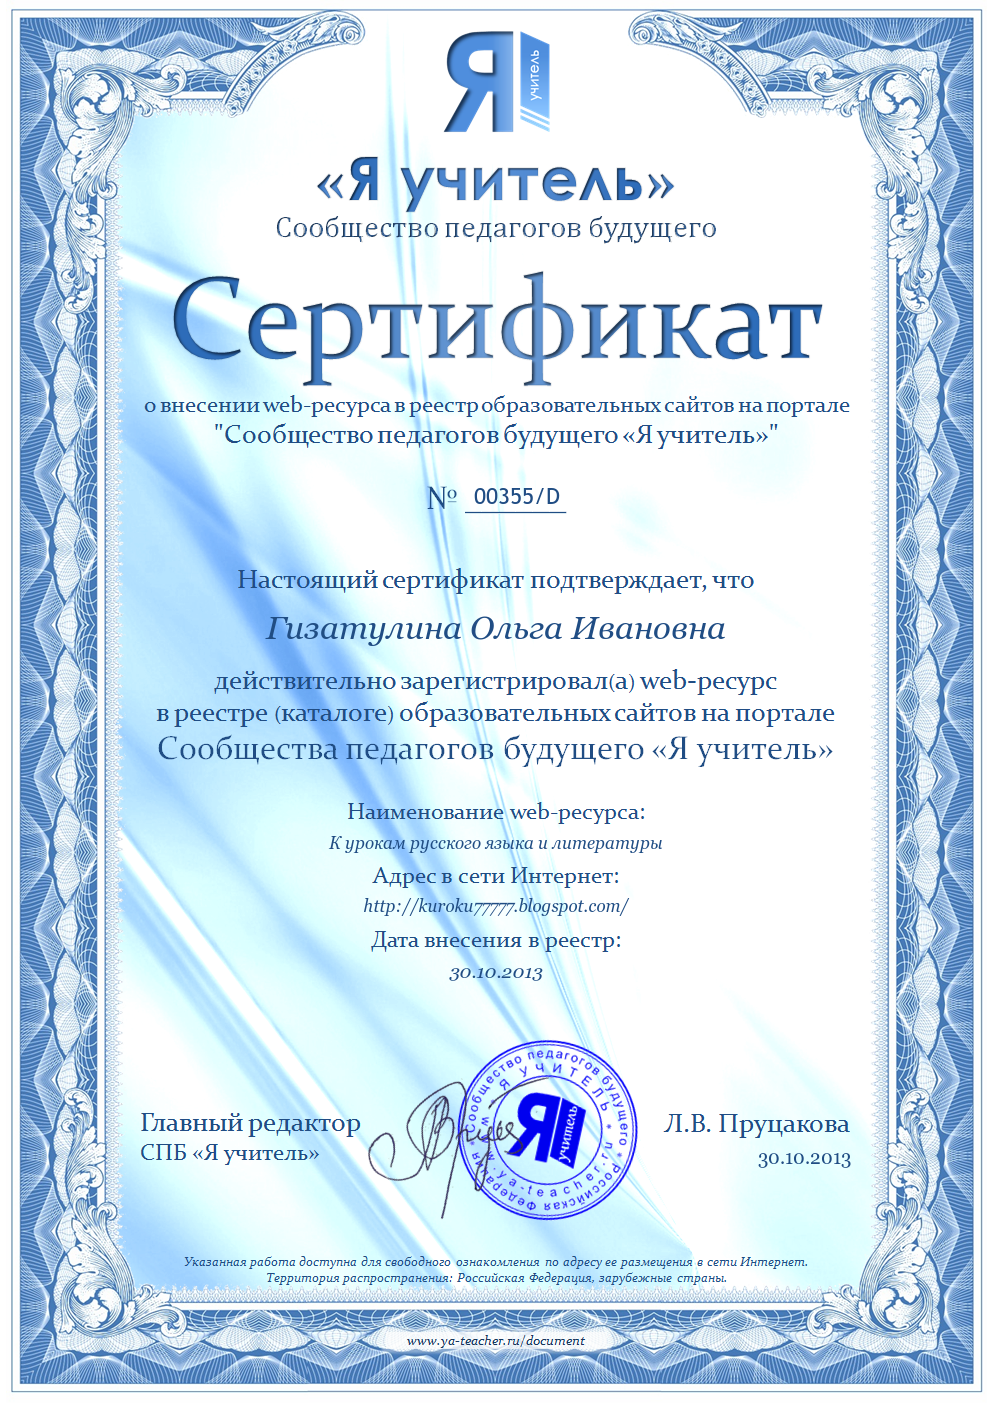 К урокам русского языка и литературы: Новый сертификат блога